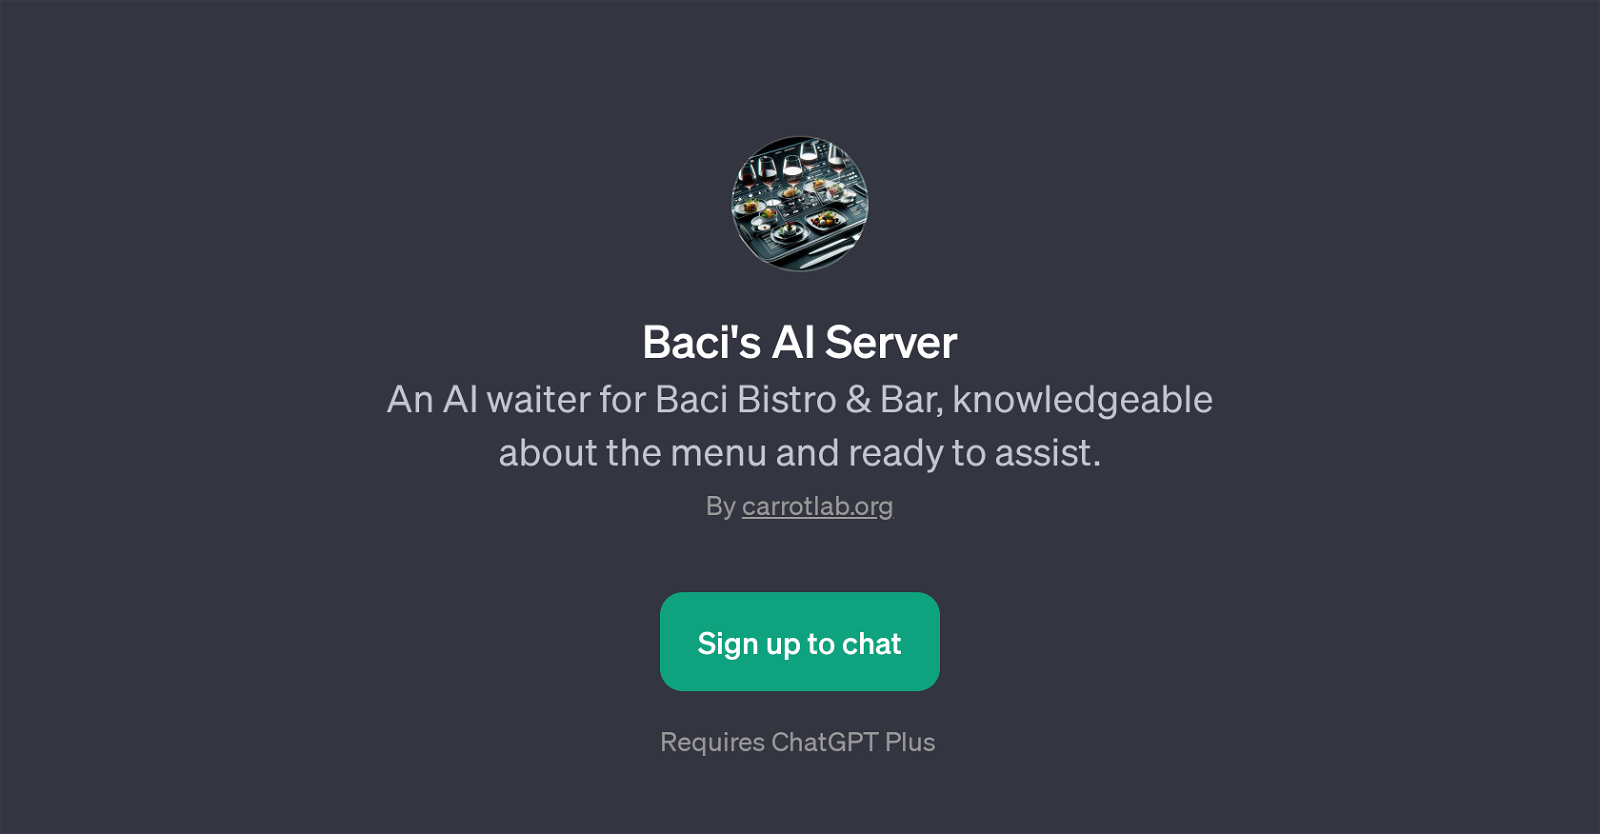 Baci's AI Server website